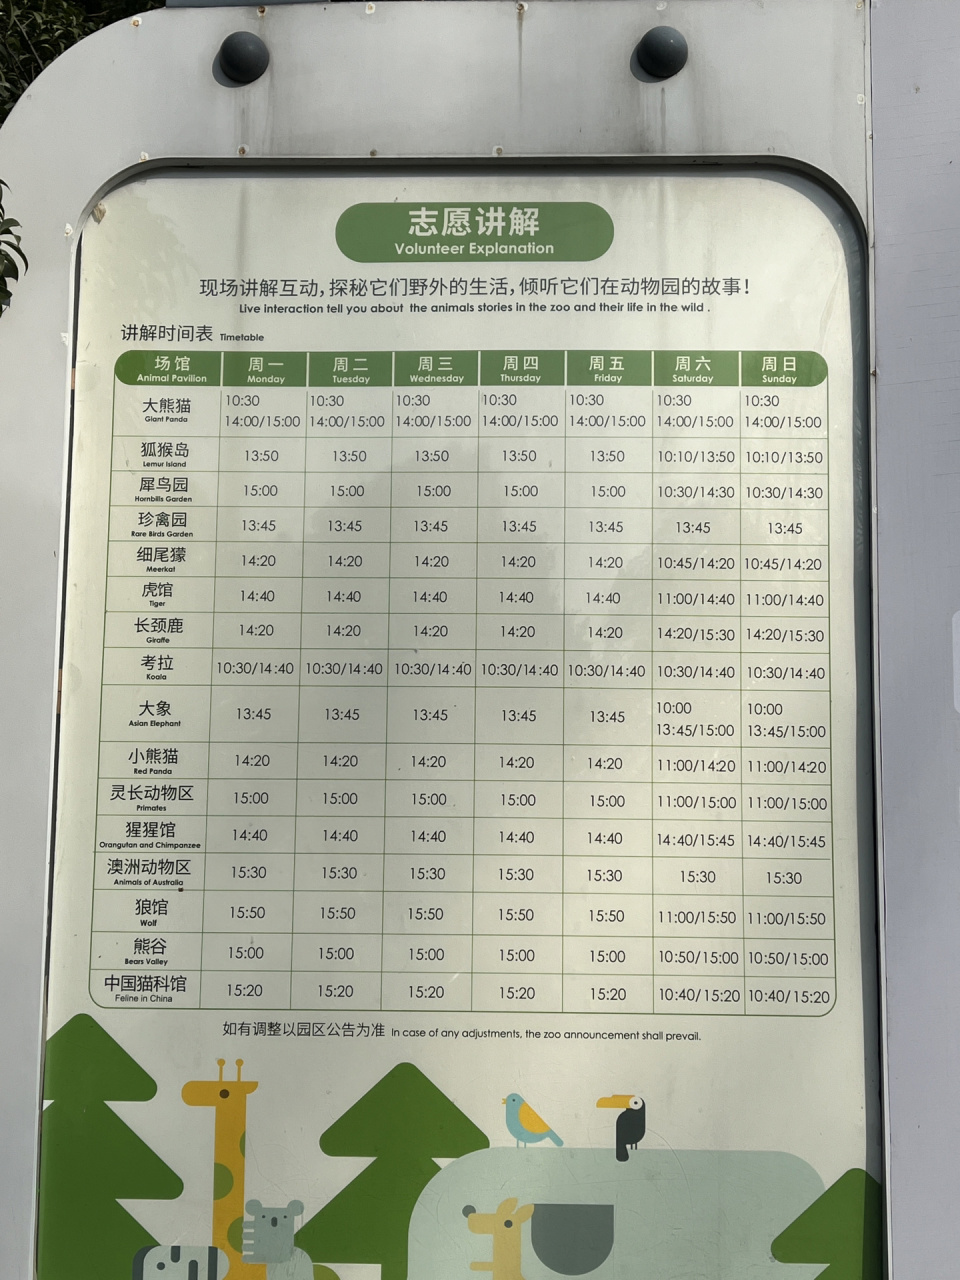 南京红山森林动物园全攻略 16615门票:成人40元,学生(可不带学生